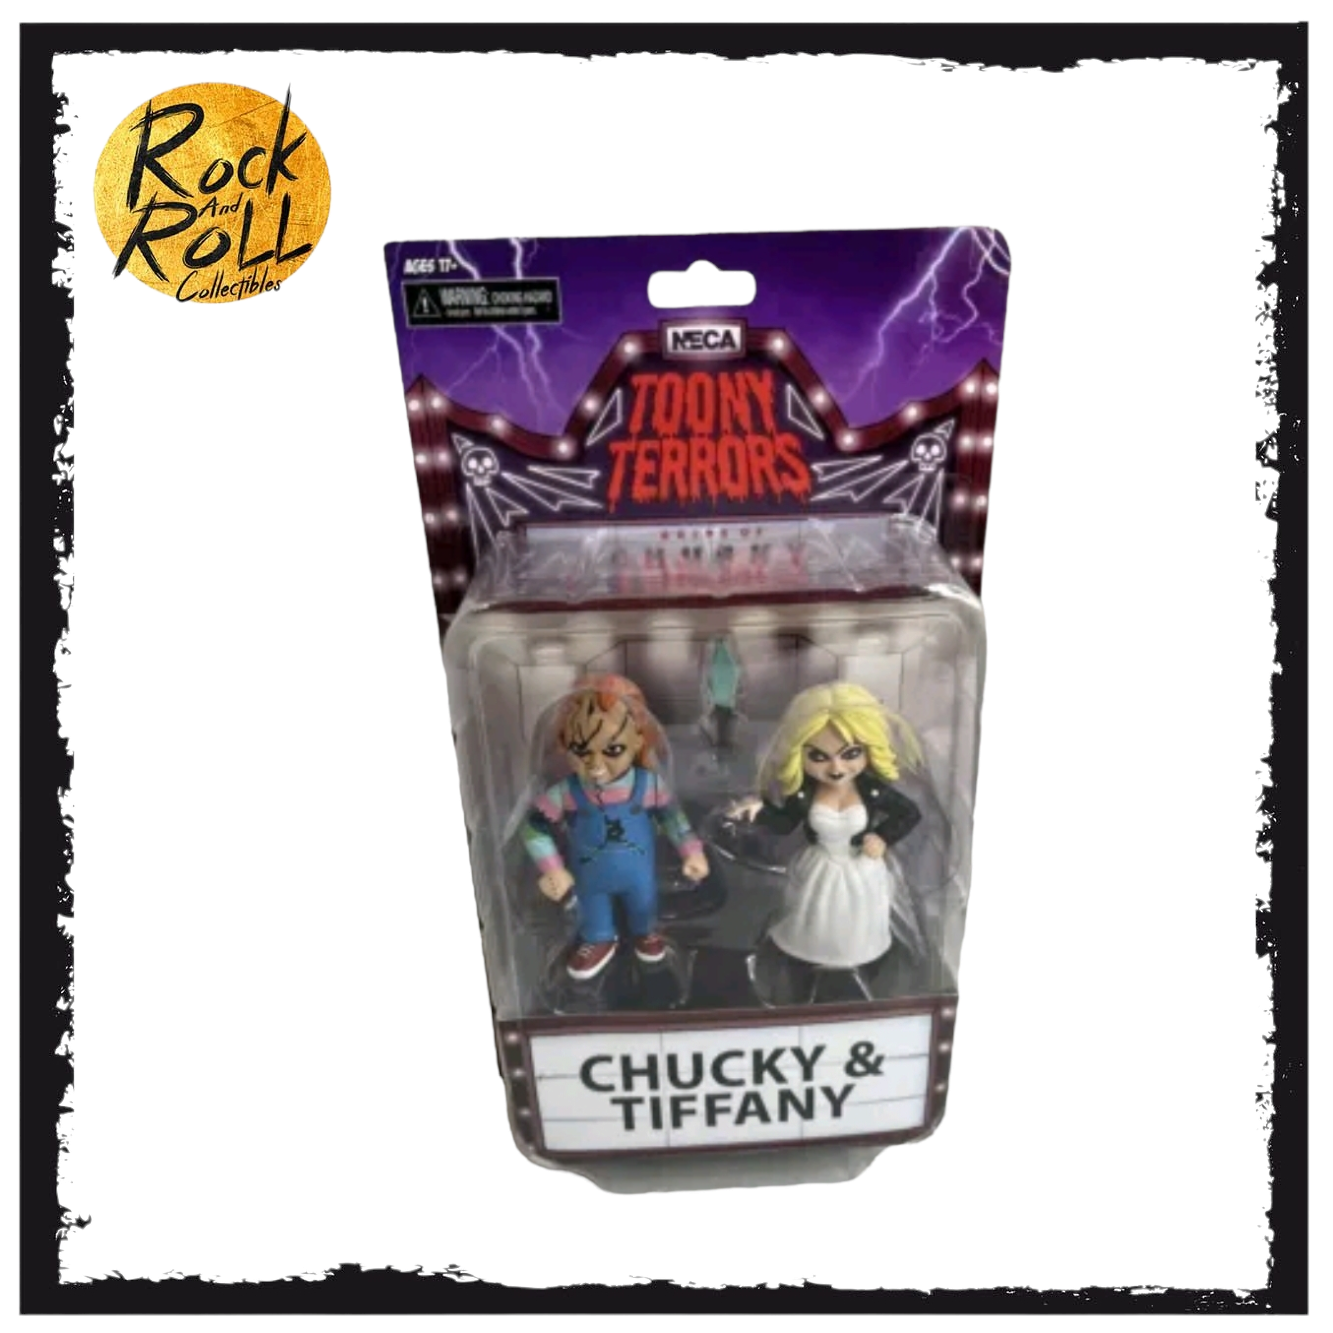 Chucky & Tiffany Child's Play NECA Toony Terrors Action Figure 2-Pack